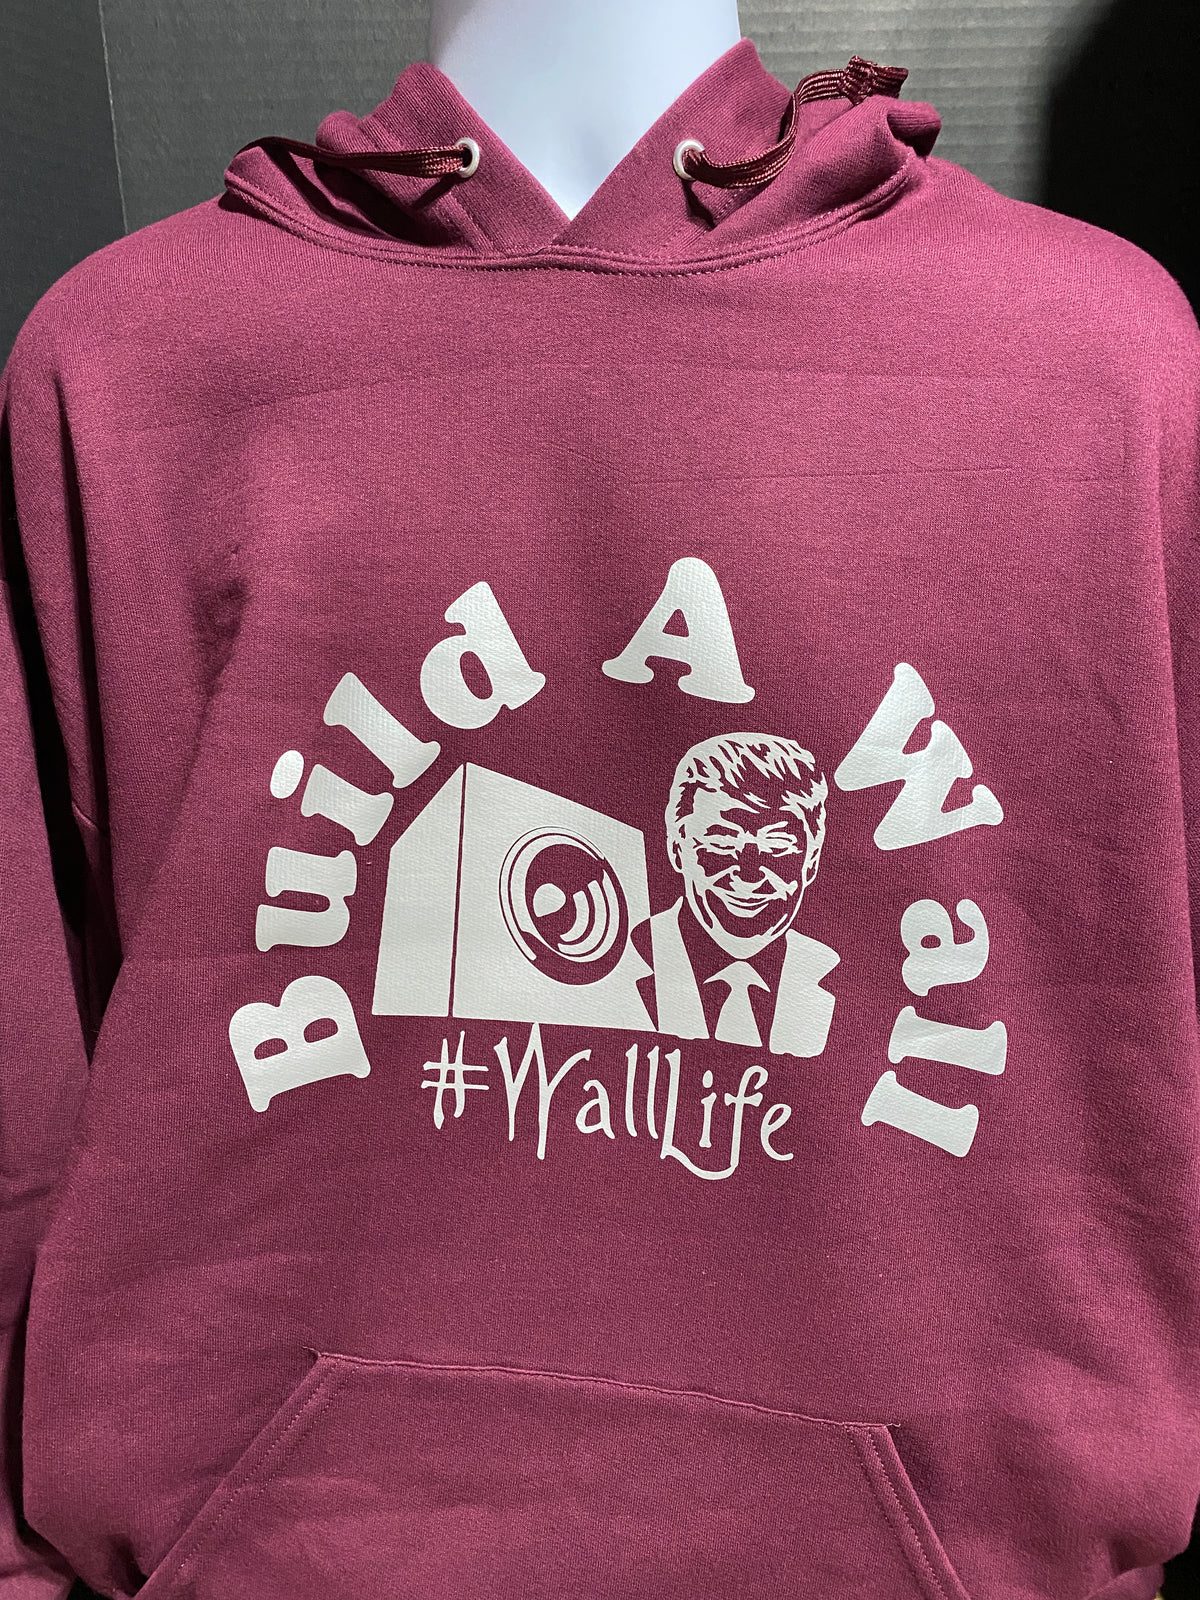 Build a Wall #WallLife Basshead Sweatshirt